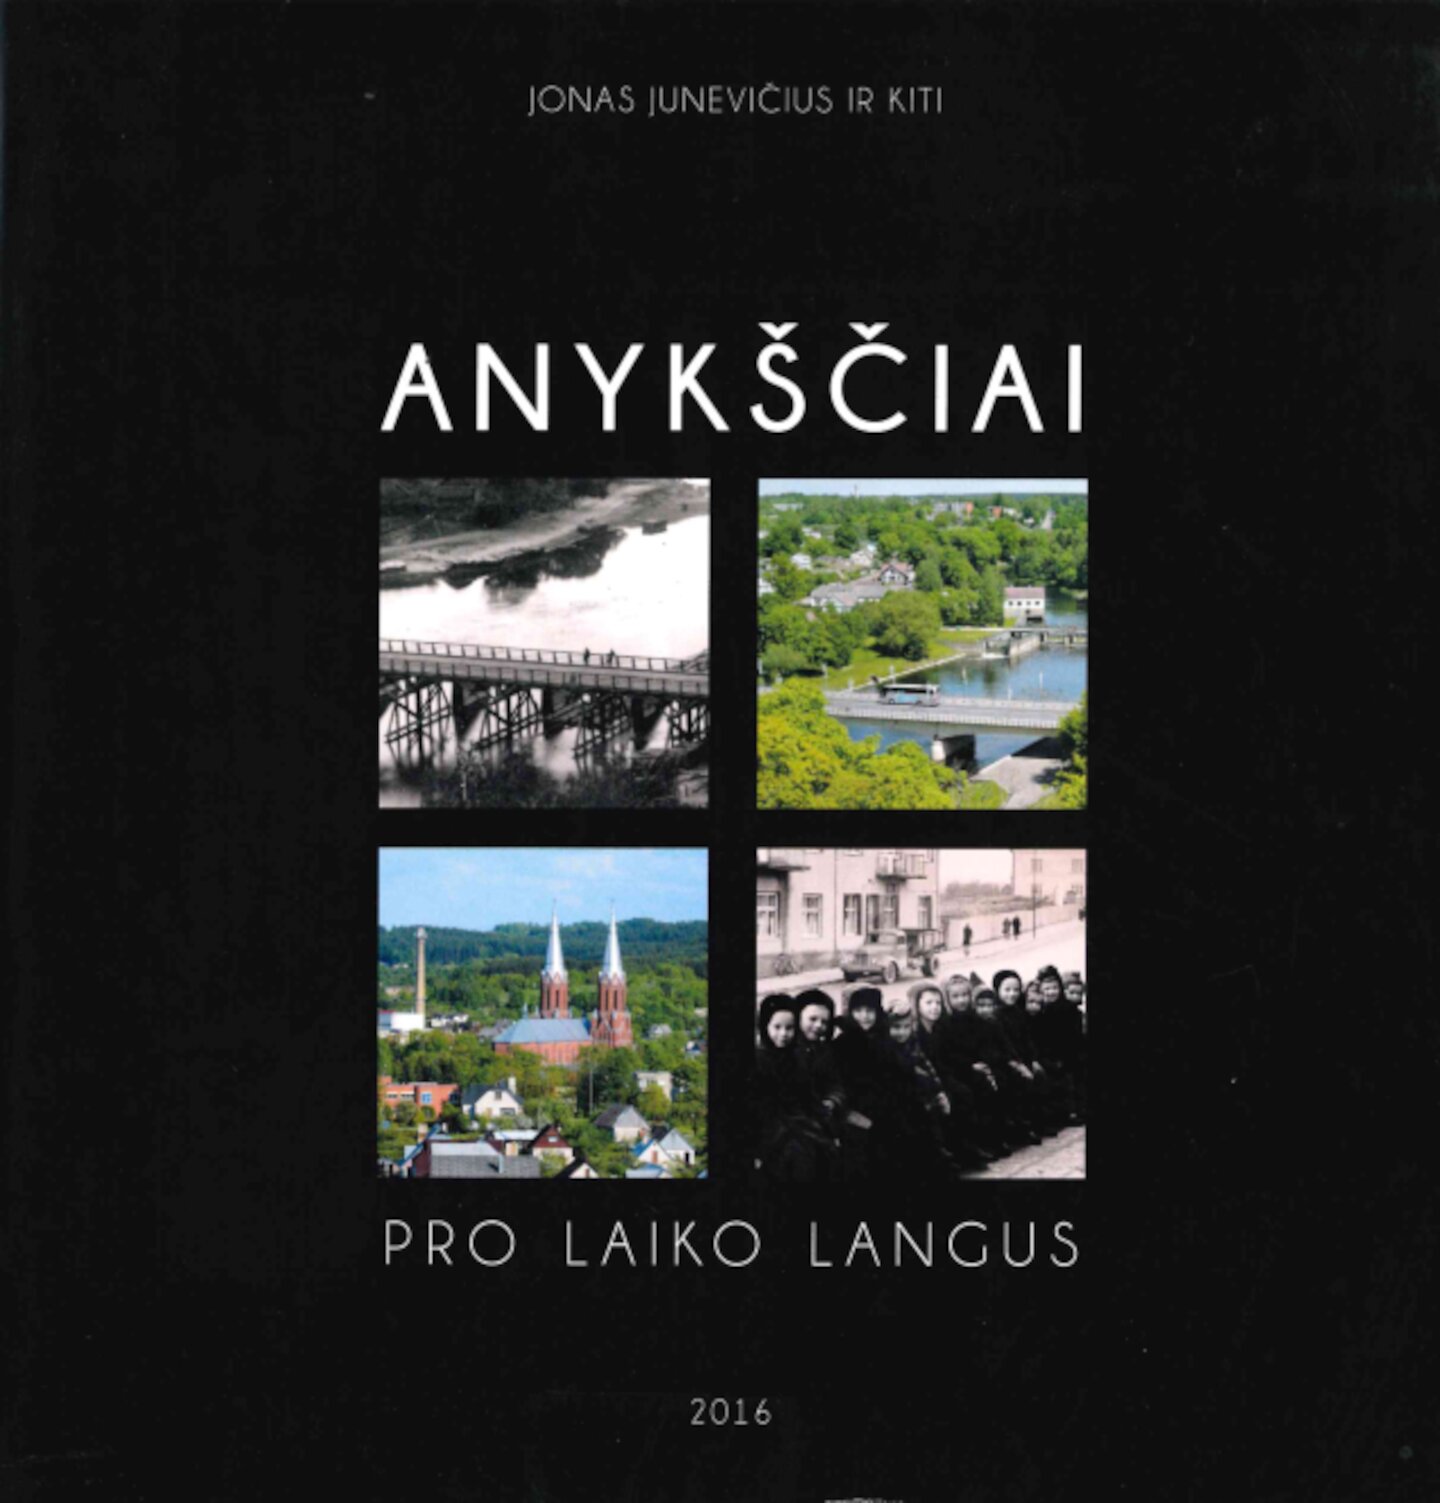 Jonas-Junevicius-Anyksciai-pro-laiko-langus